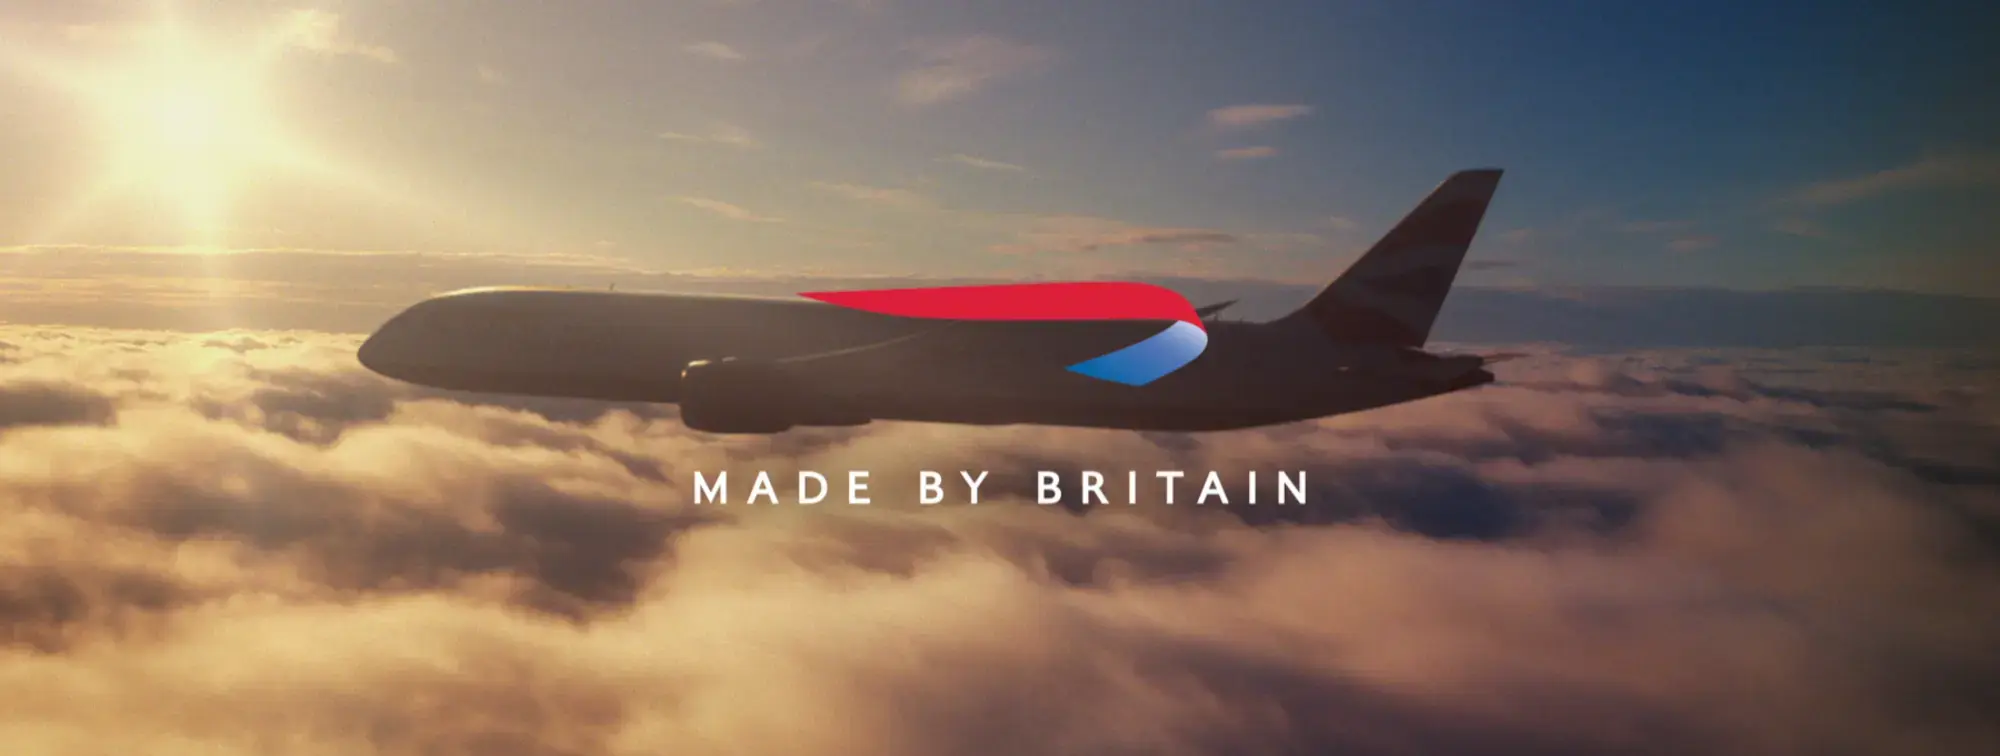 British Airways - Made by Britain